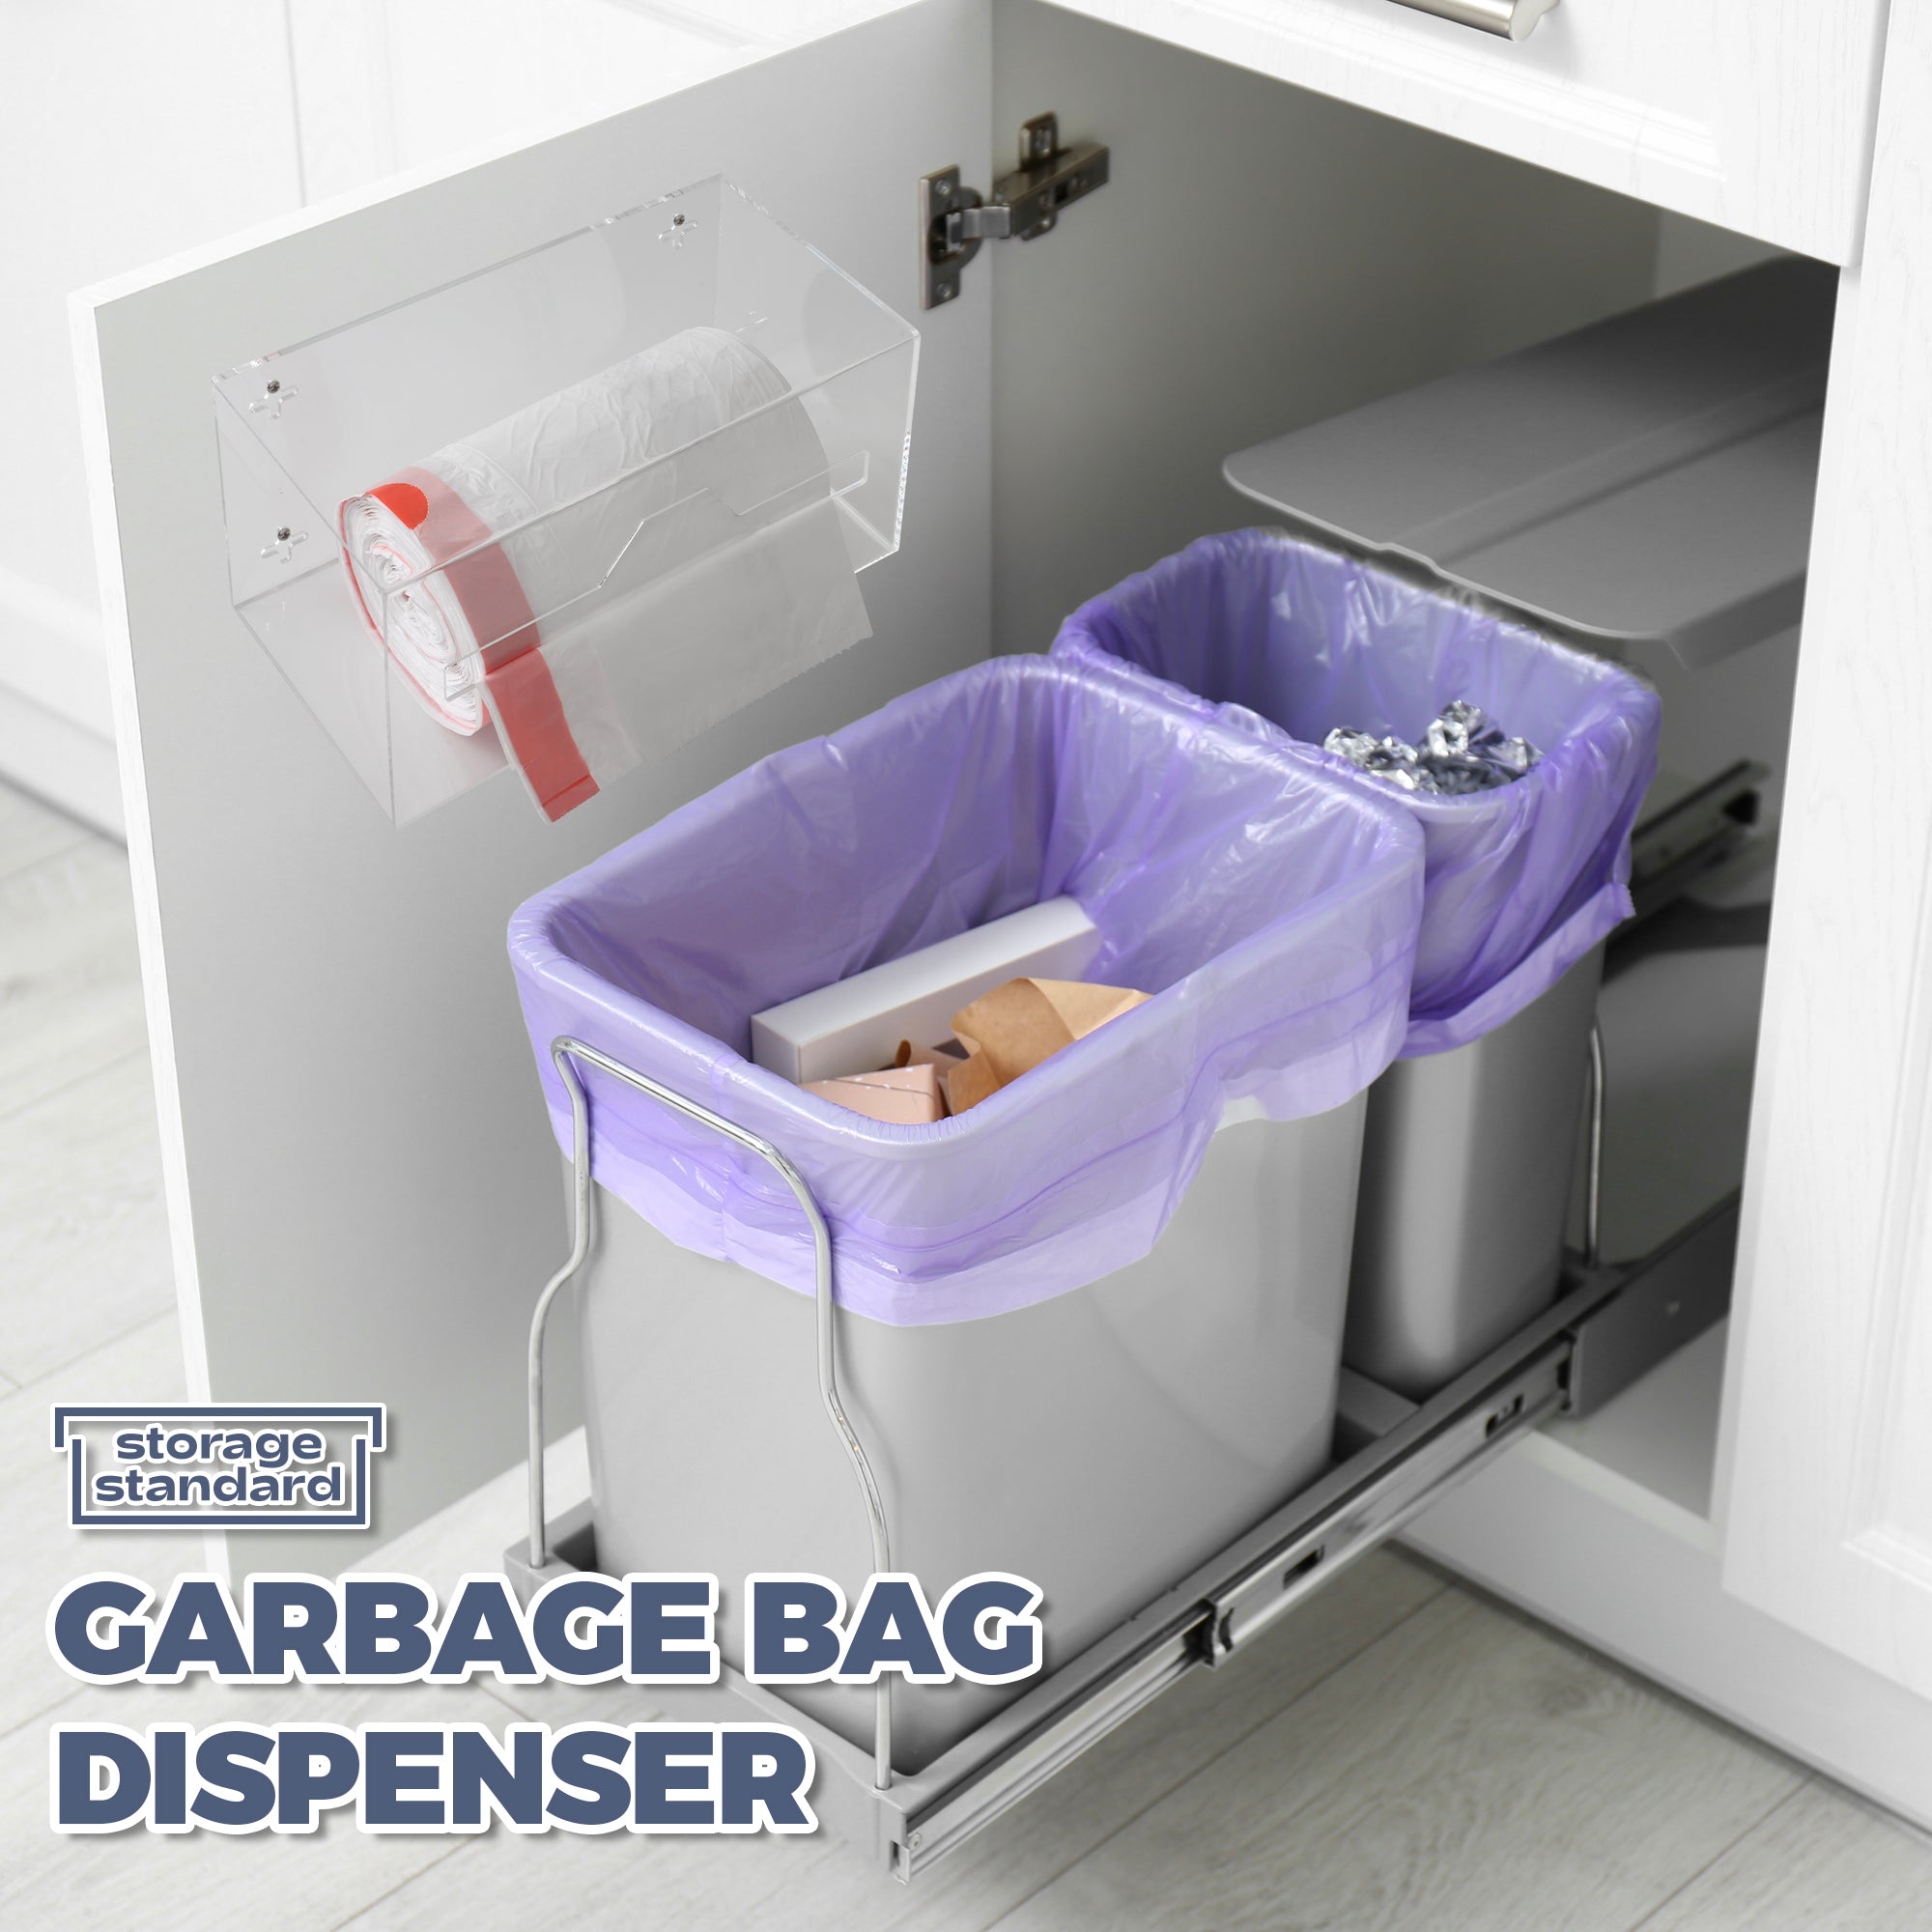 Storage Standard Trash Bag Holder Dispenser - Acrylic Trash Bag Dispenser Roll Holder, Garbage Bag Holder for Cabinet, Garbage Bag Dispenser Under Sink - Trash Bag Organizer for Home or Shops - Small